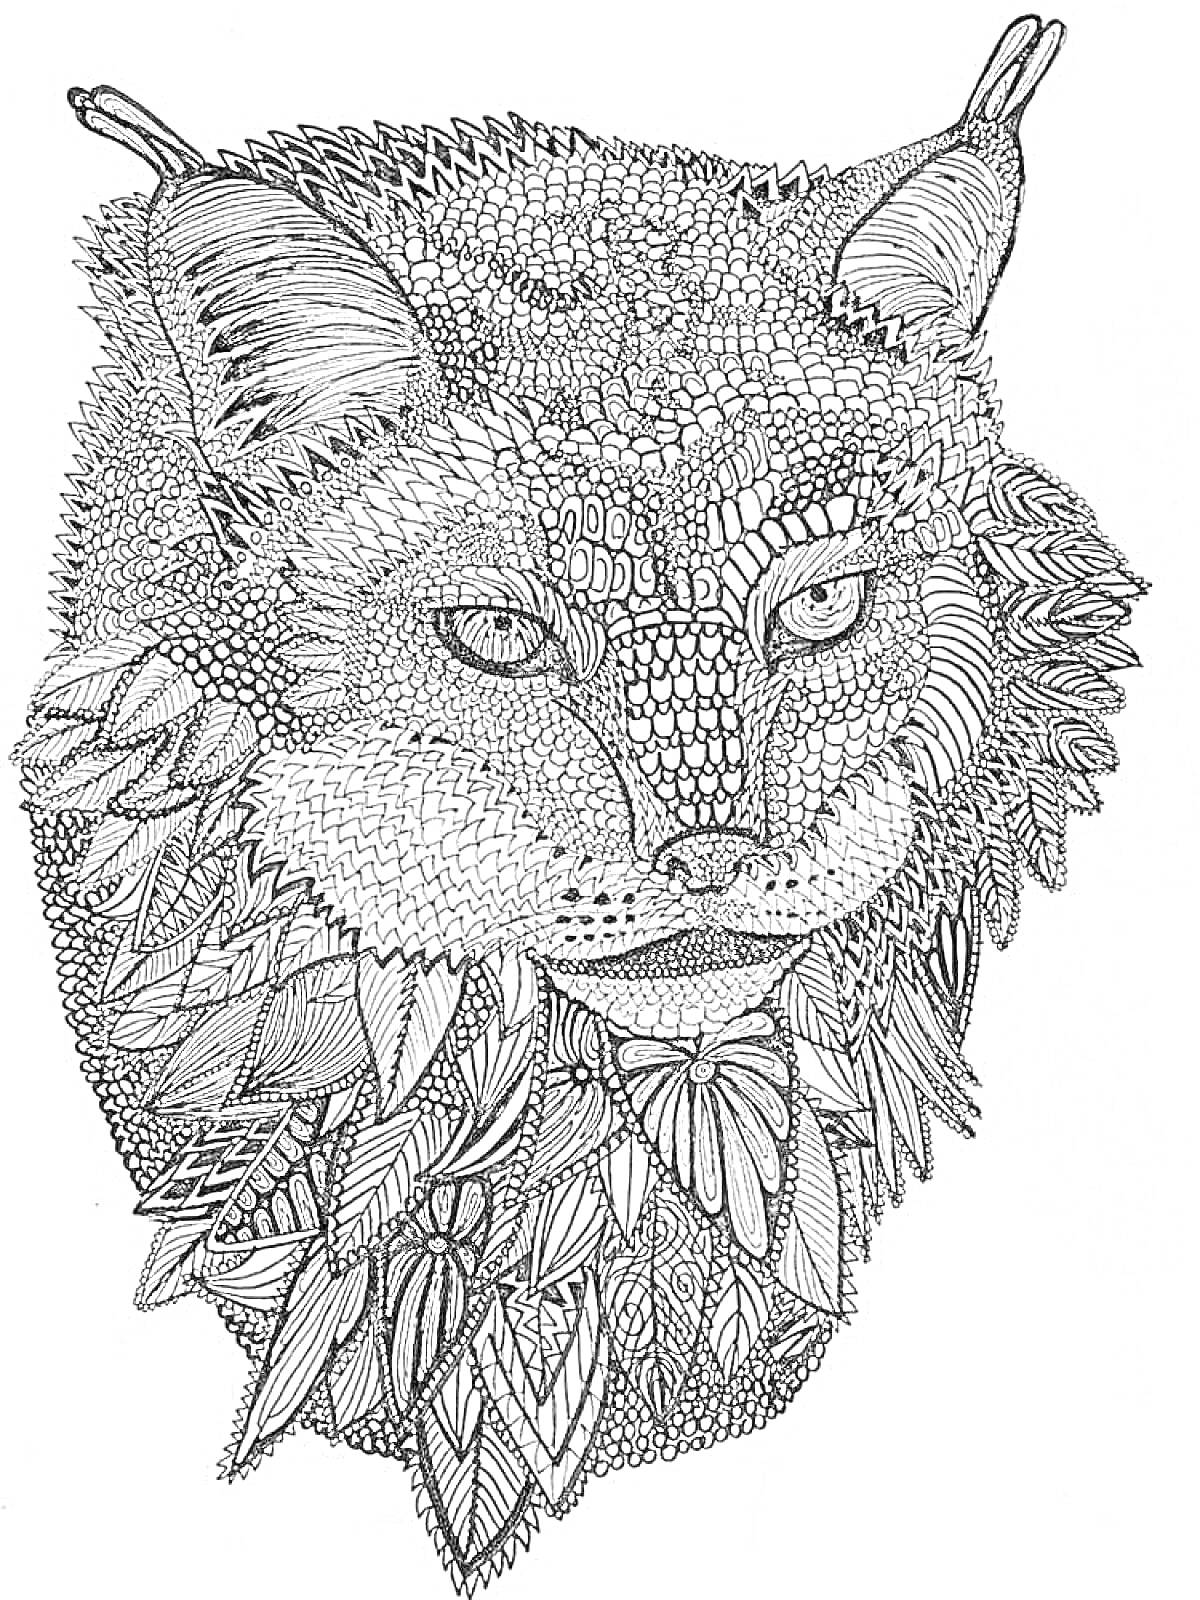 Раскраска Рисунок сложного животного с элементами узоров и текстур